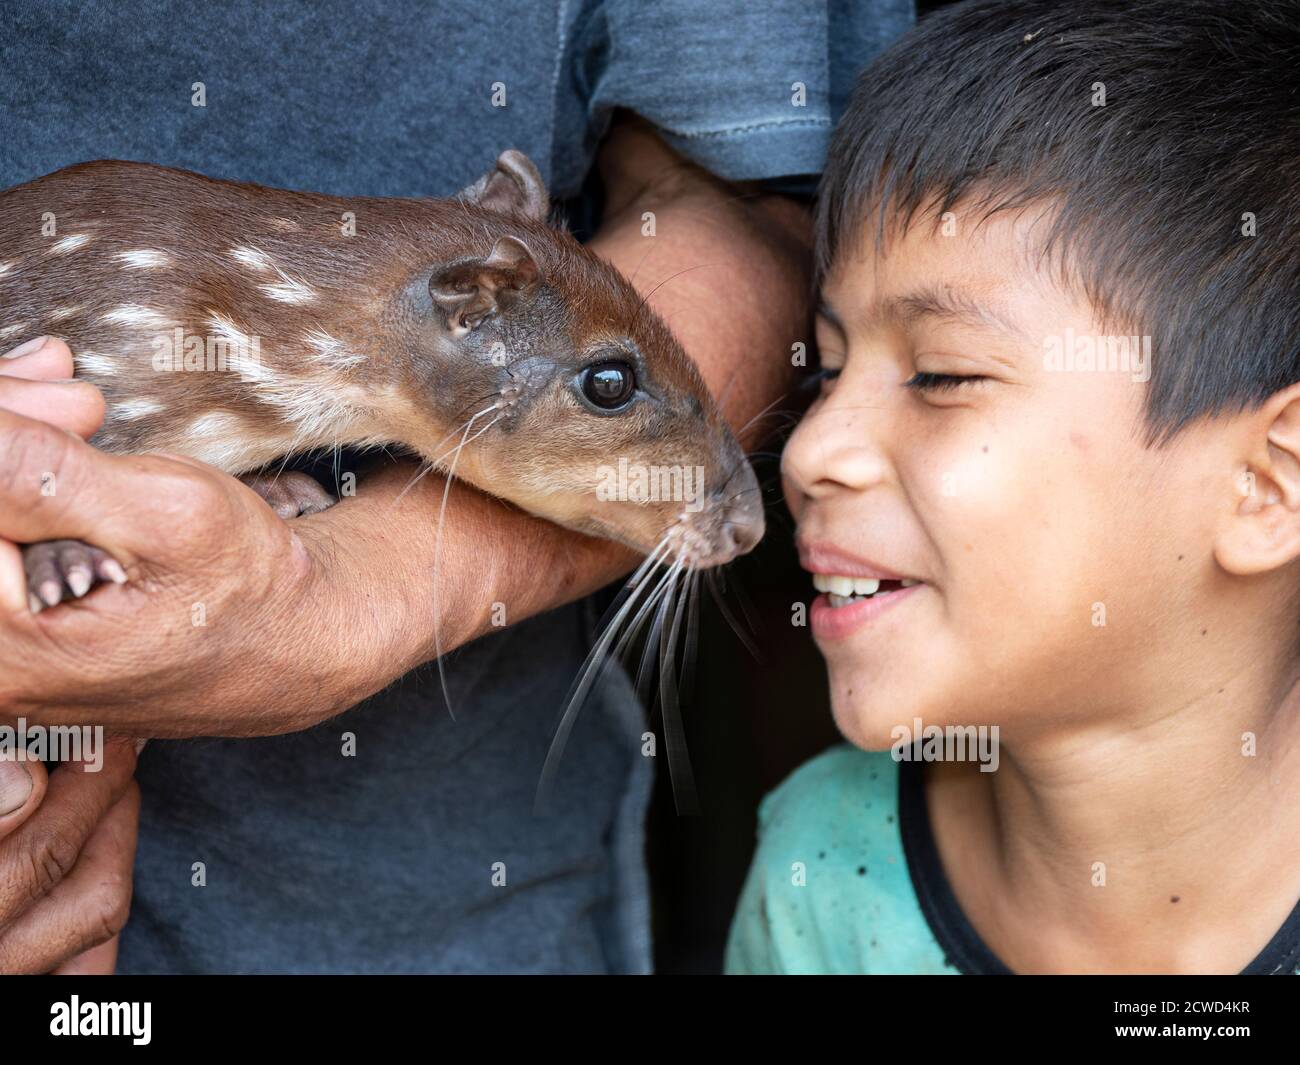 Un jeune garçon avec l'animal de compagnie de la famille, un agouti, Dasyprotta spp, dans le village de San Francisco, bassin de l'Amazone, Pérou. Banque D'Images